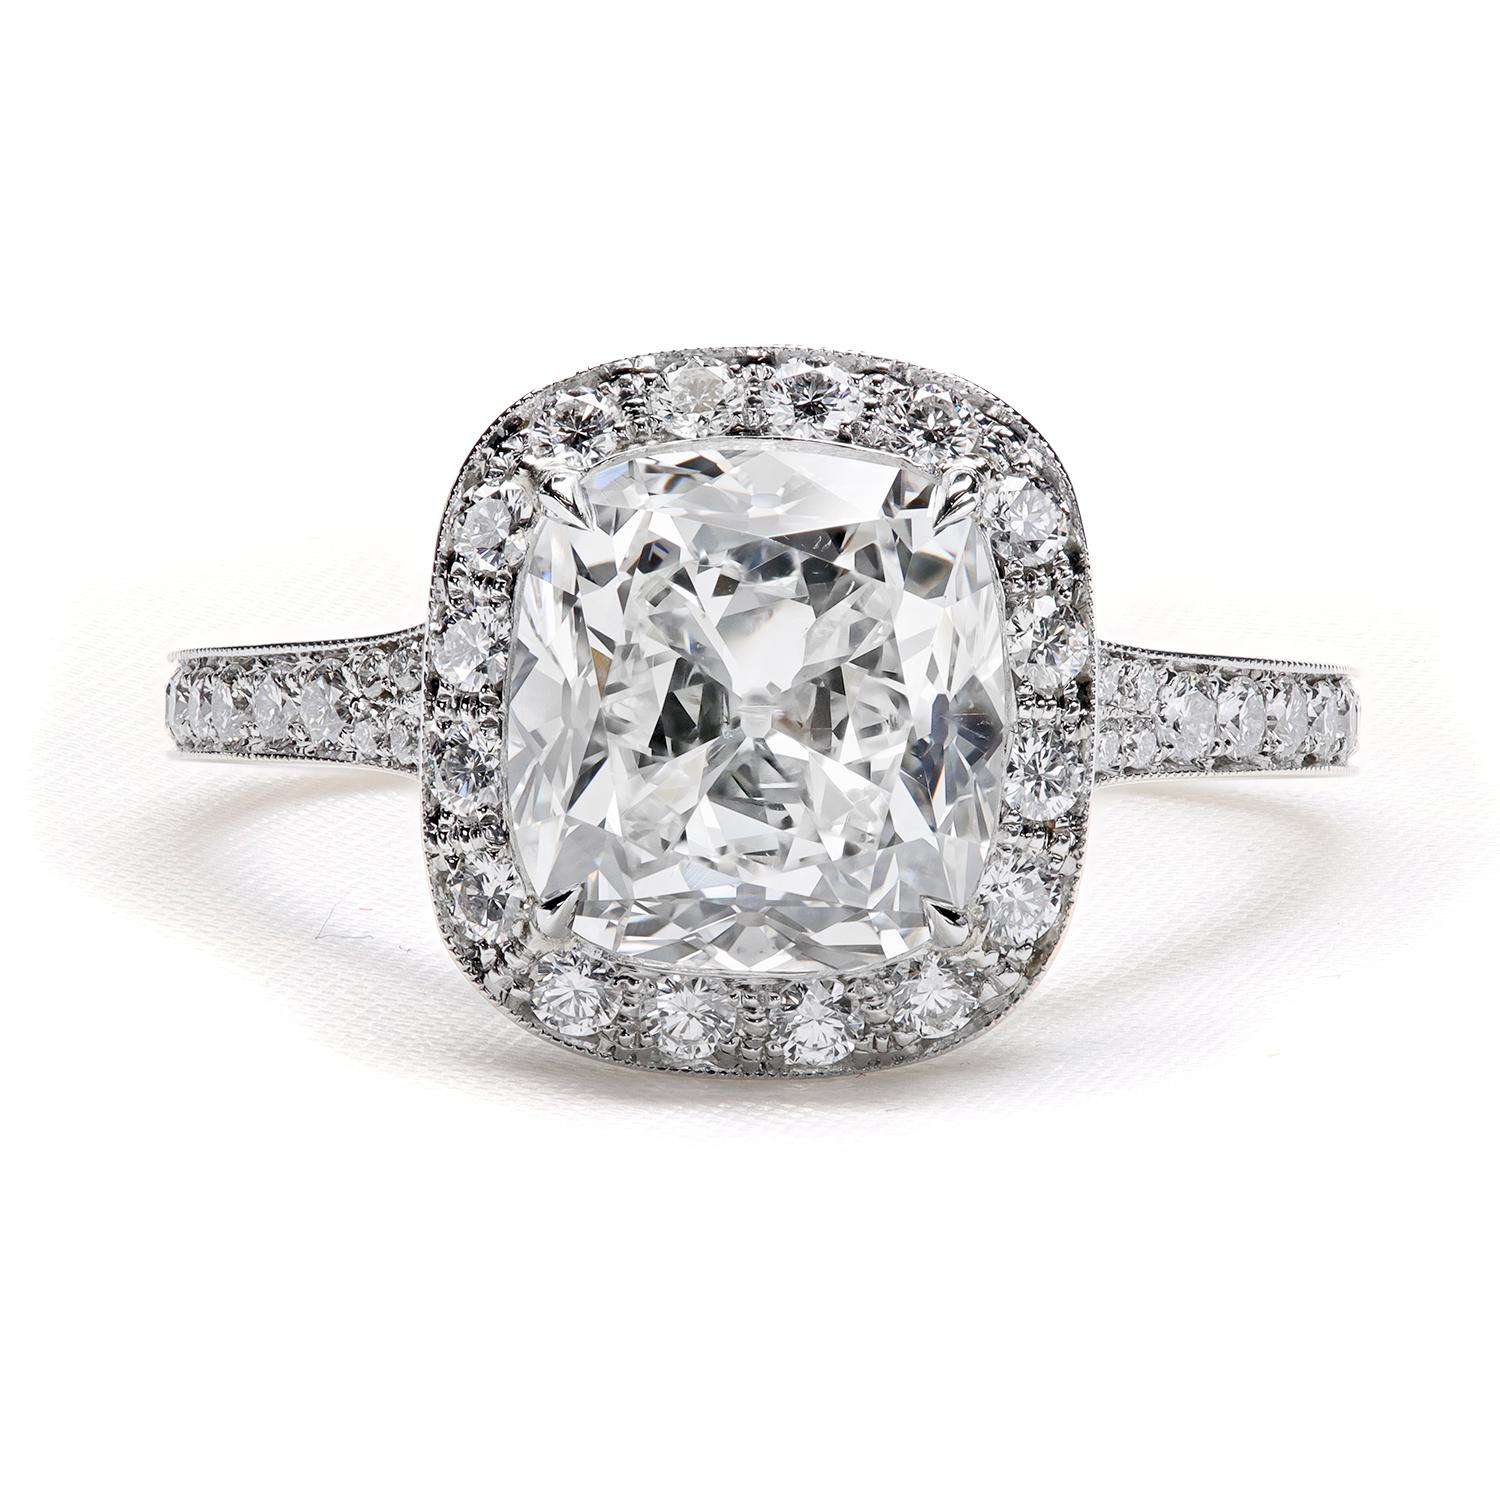 La bague halo exclusive Cold Fusion™ de Leon Megé offre un aperçu du passé, rendant hommage aux fabuleux trésors historiques de l'ère Art déco.

Diamant coussin Nature Trueing Antique™ GIA 2,57 carats F/VS2 1463117464
96 F/VS Diamants naturels de